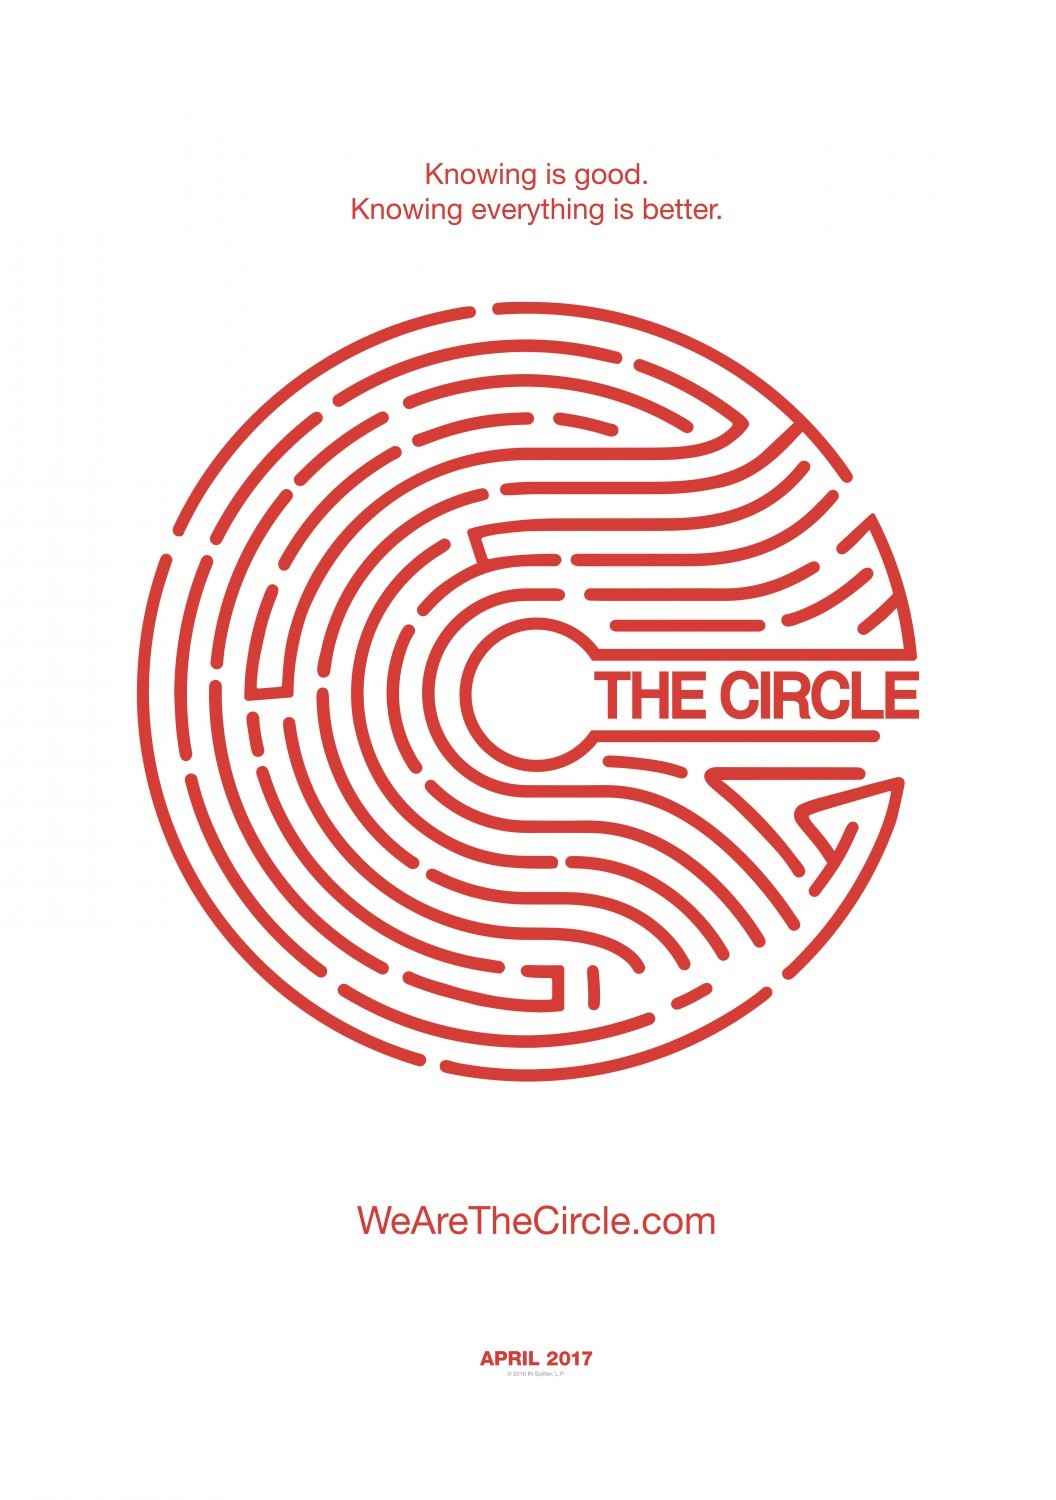 the-circle-il-cerchio-trailer-e-poster-del-film-con-tom-hanks-e-emma-watson.jpg